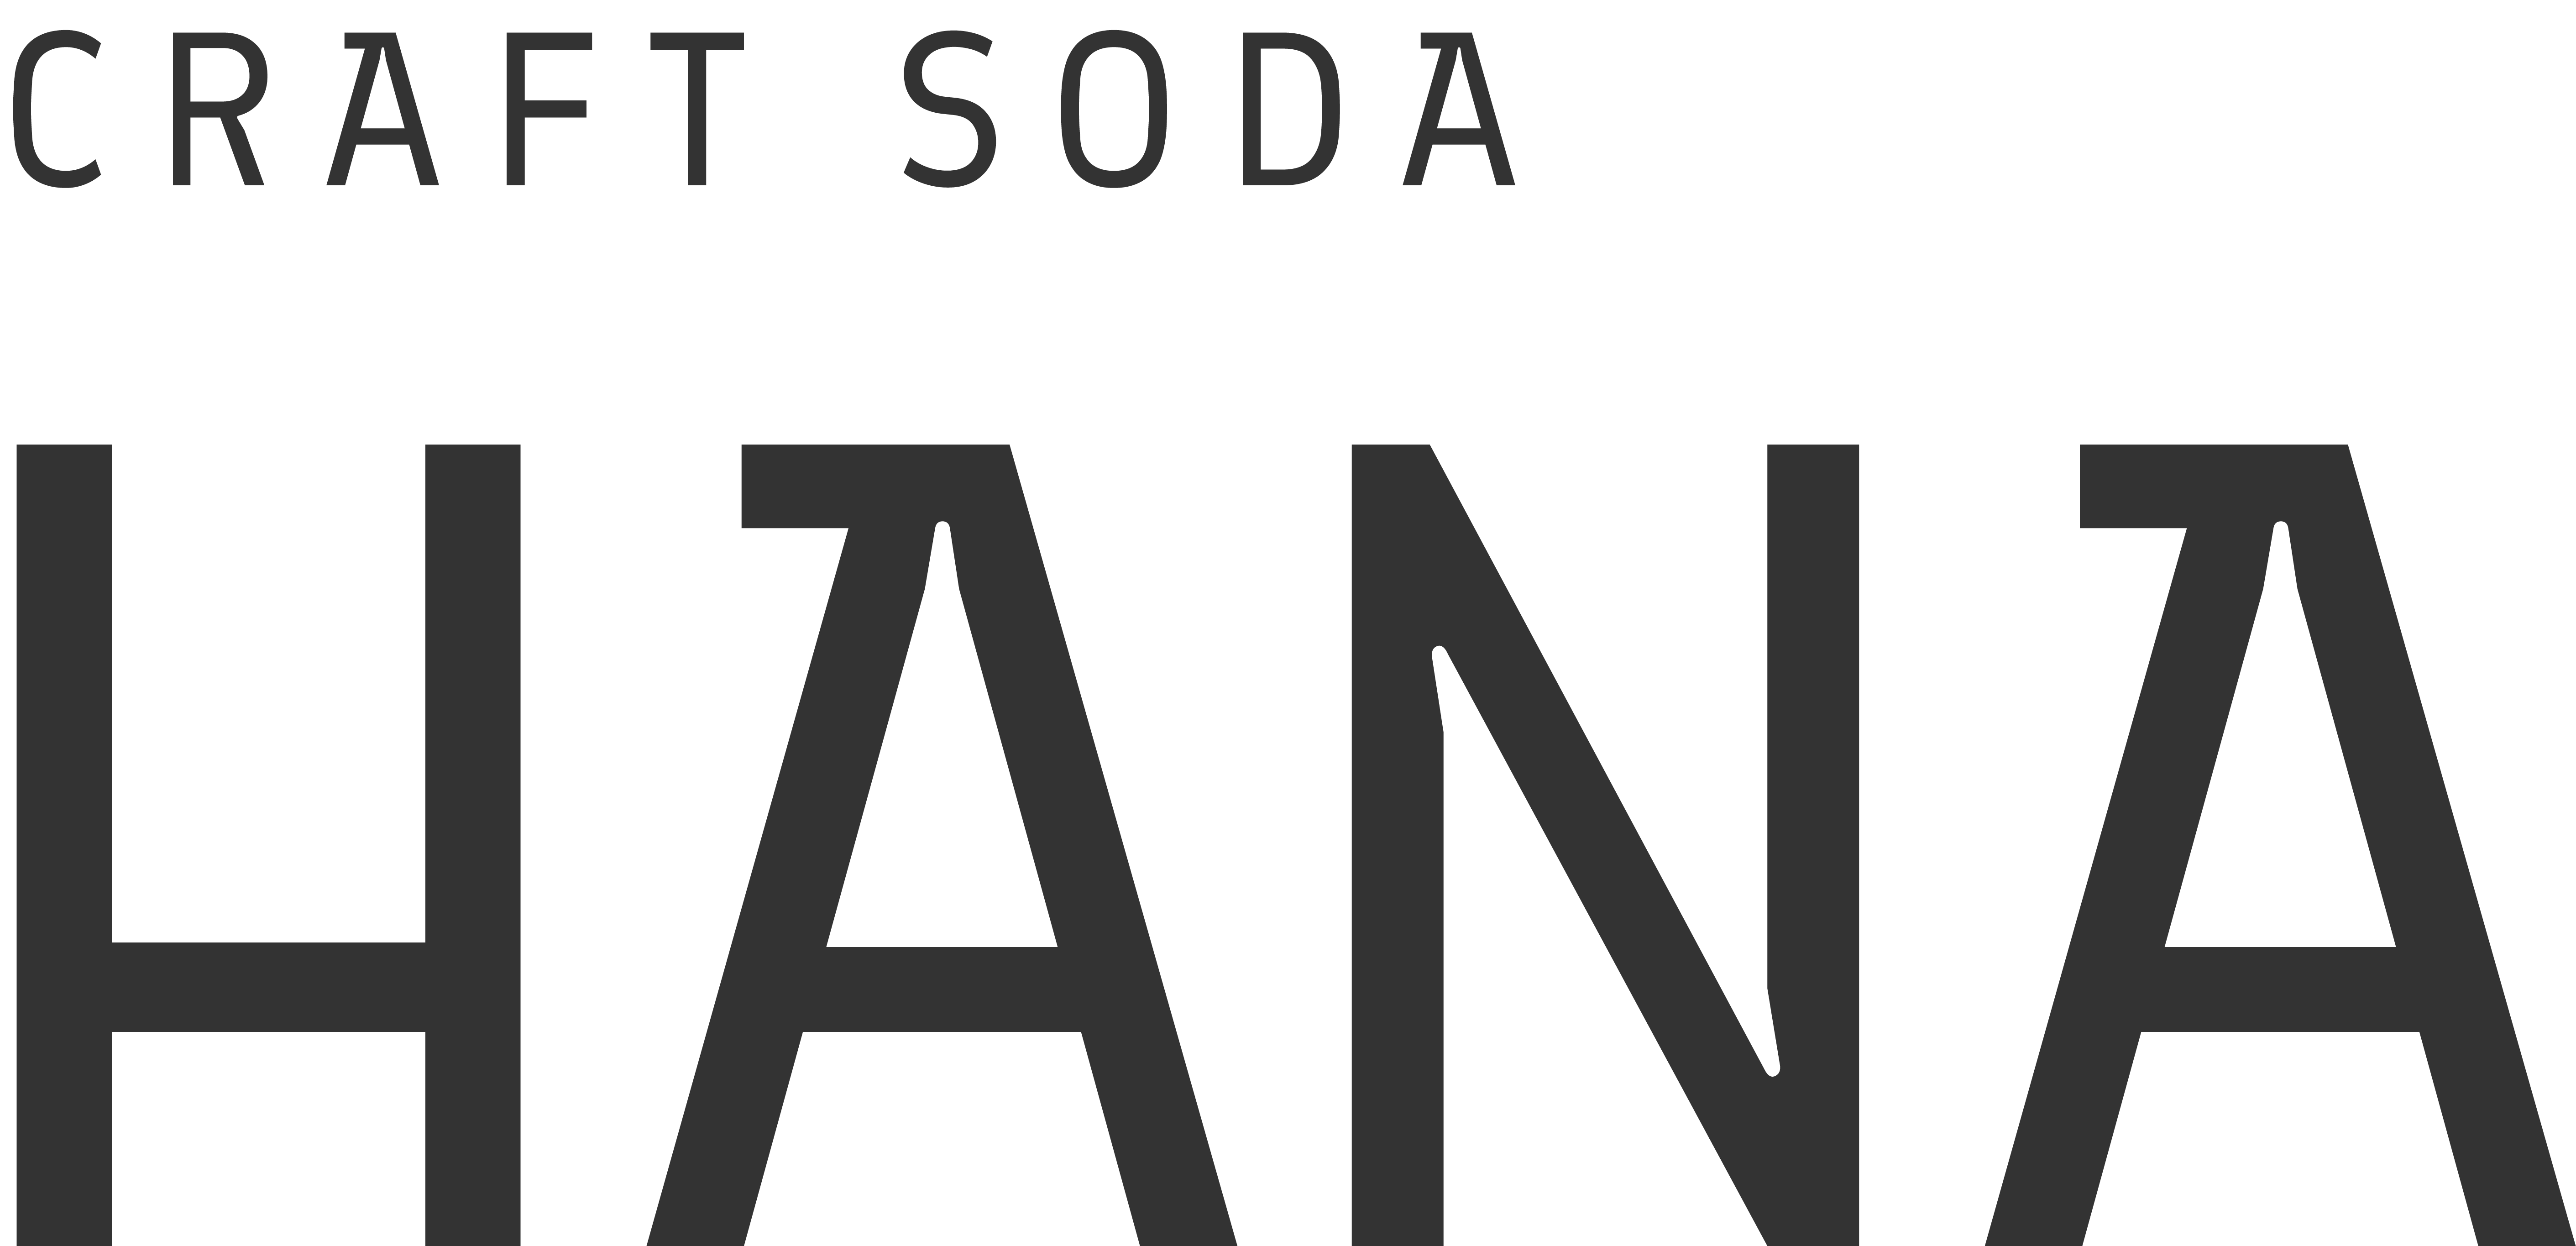 Hana Craft Sodas